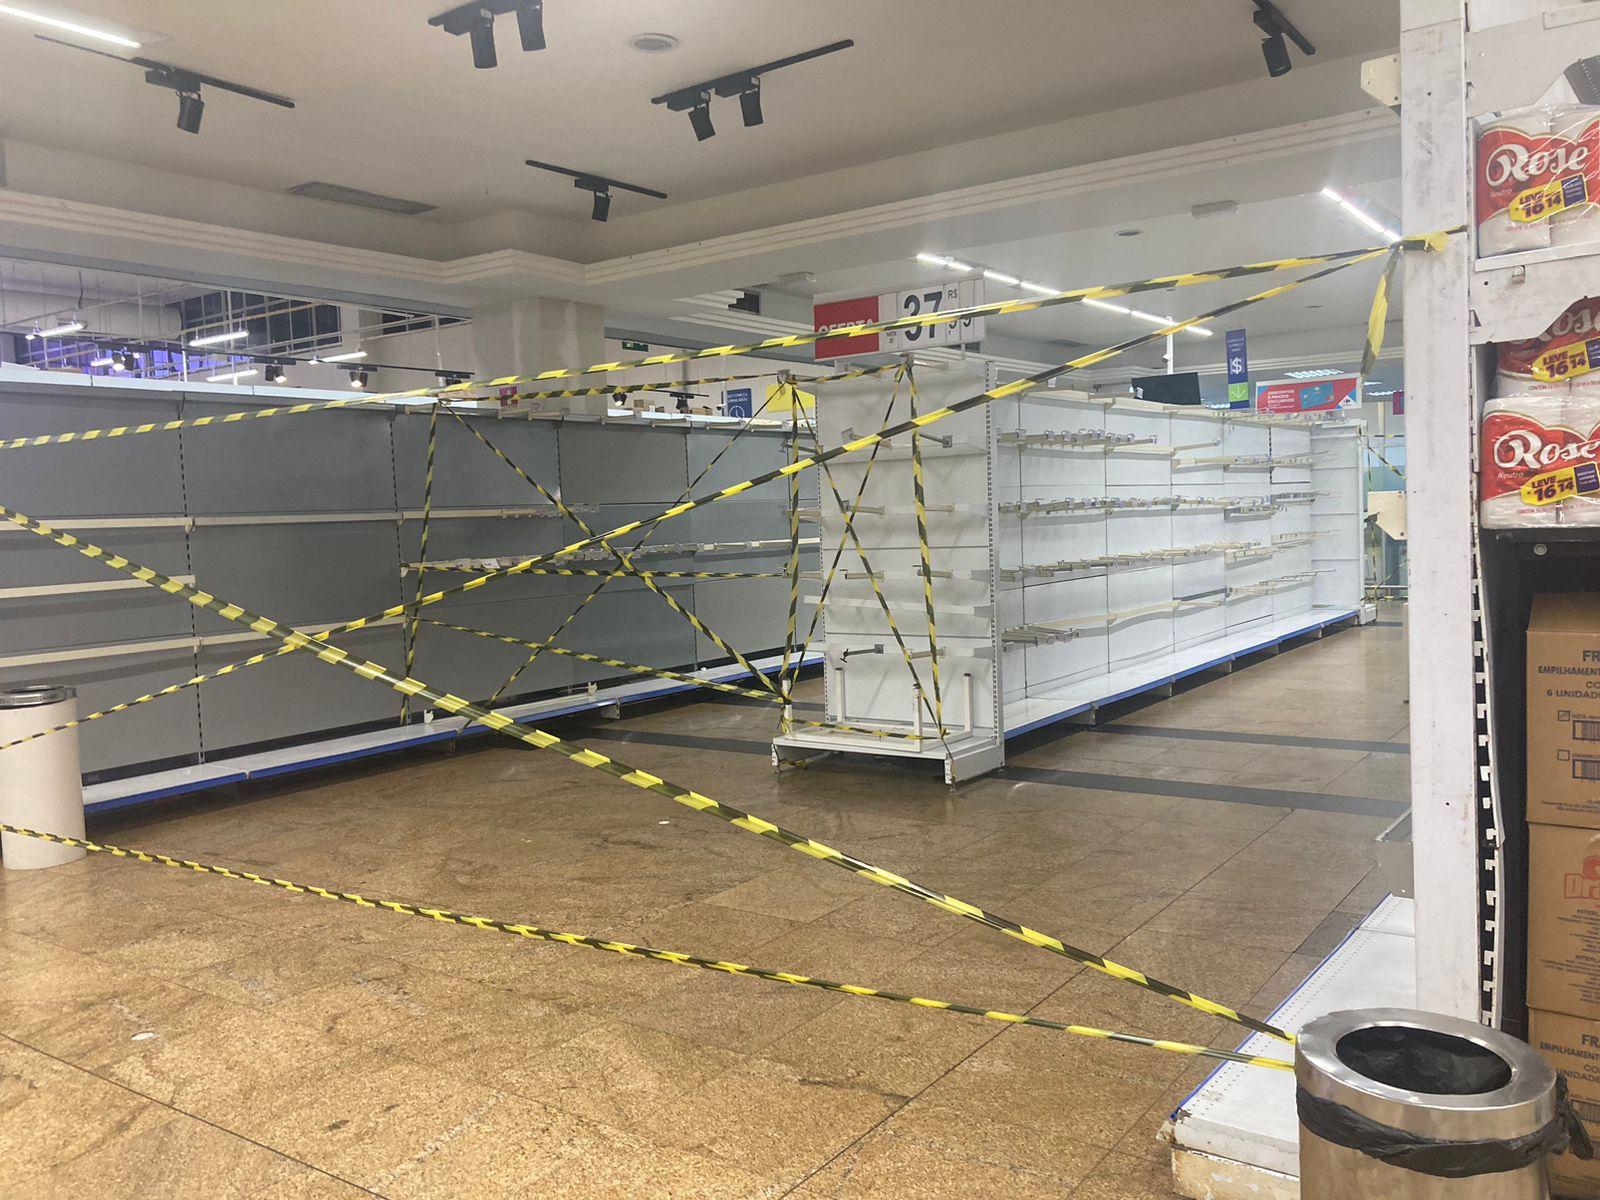 Espaços com prateleiras vazias foram interditadas pelo hipermercado Carrefour